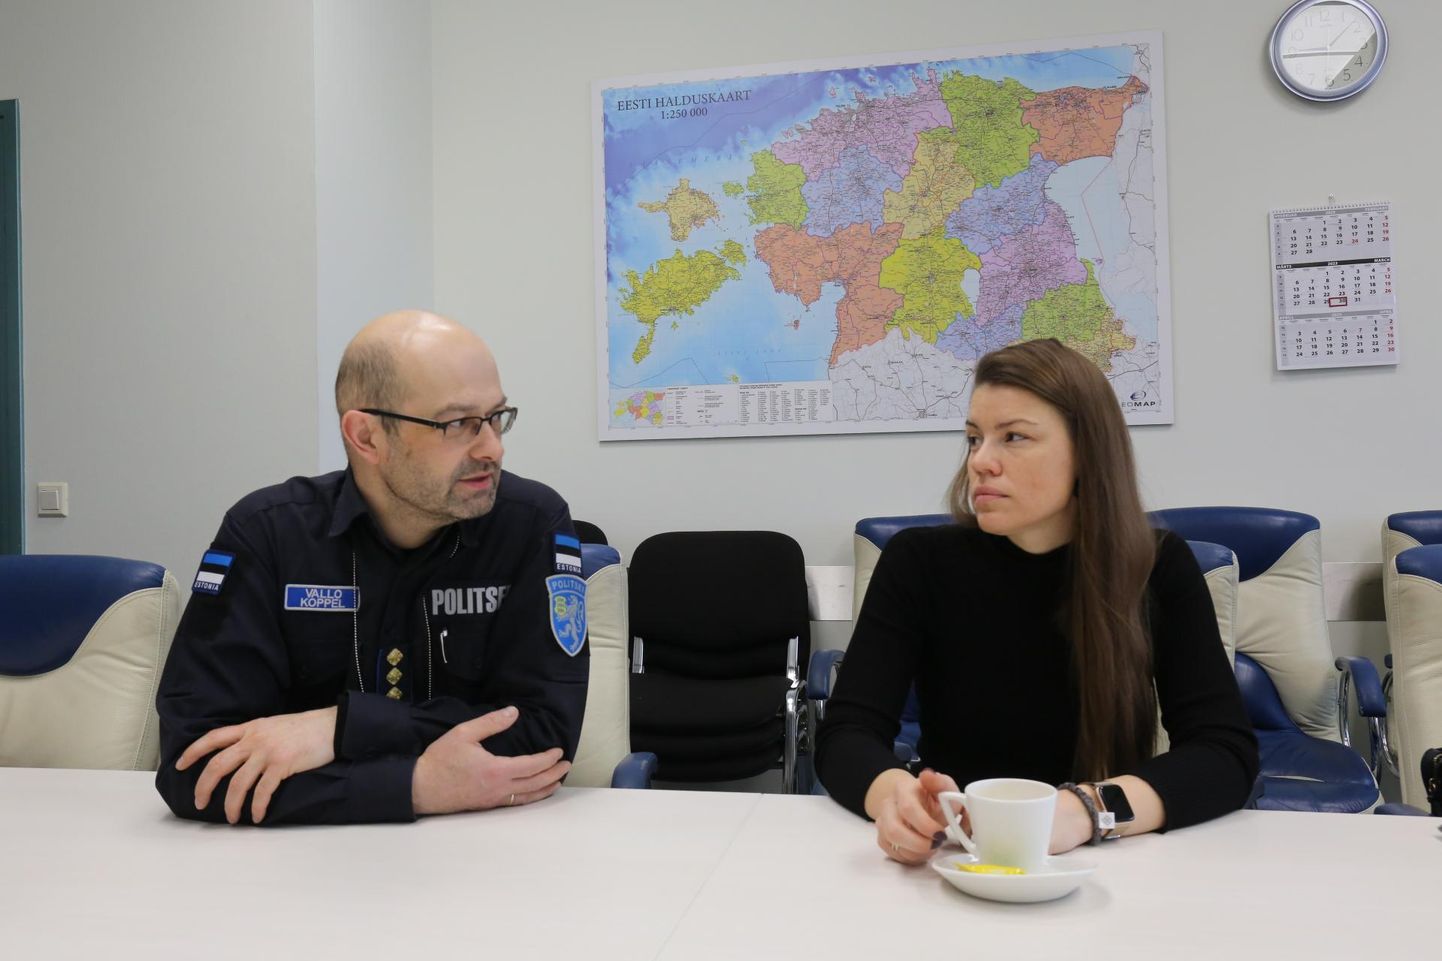 Lõuna-Eestis on politsei ja prokuratuuri silmis kõrgeima asetusega lähisuhtevägivalla kuriteod, mida menetletakse suurema innuga kui väiksemaid vargusi, selgitasid PPA Lõuna prefekt Vallo Koppel ja Lõuna ringkonnaprokuratuuri juhtivprokurör Kairi Kaldoja.